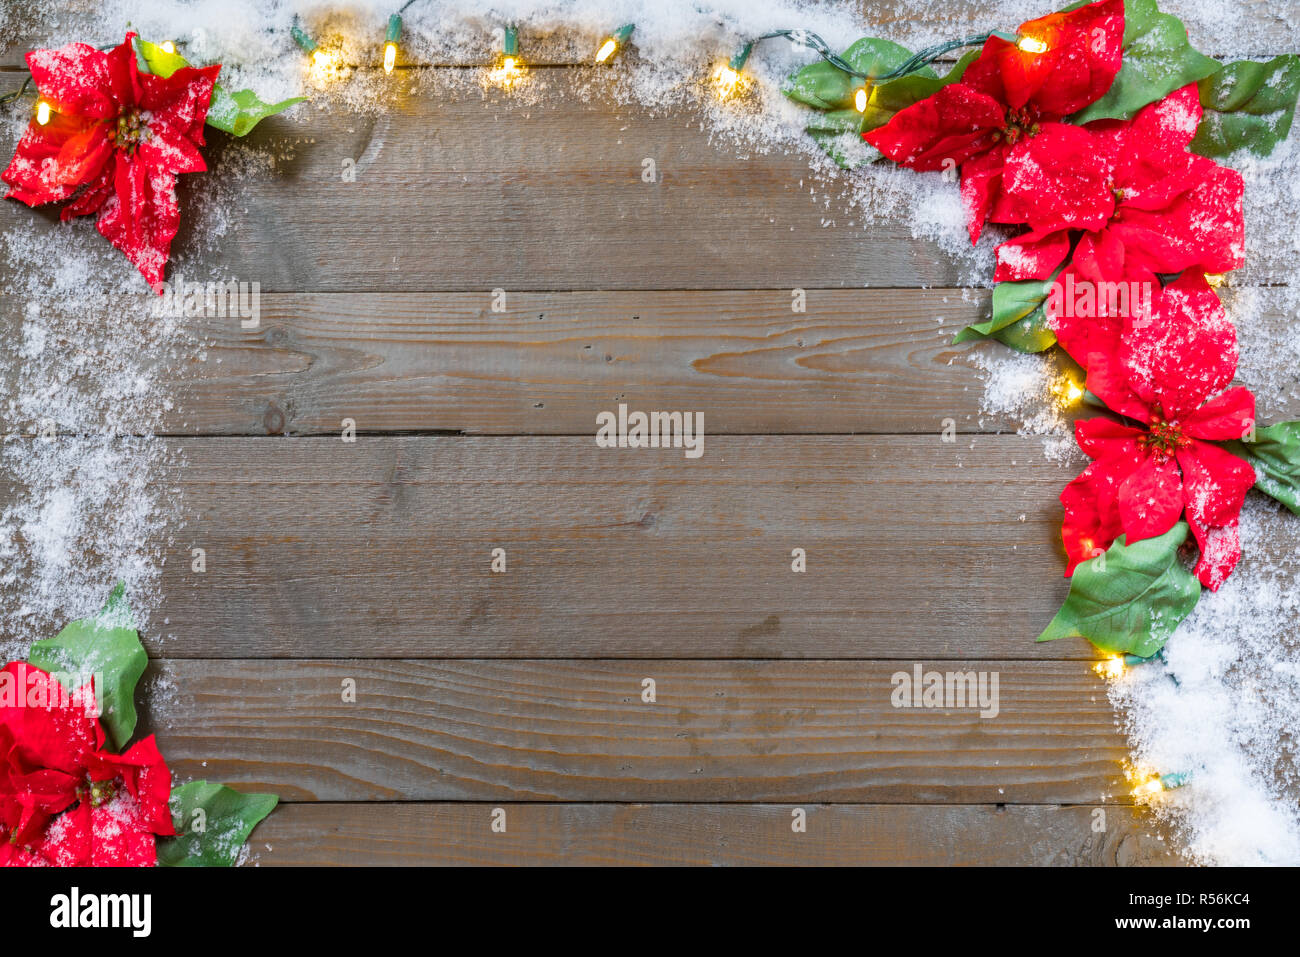 Noël poinsettia fleurs couvertes de neige sur des planches avec des lumières d'arrière-plan Banque D'Images